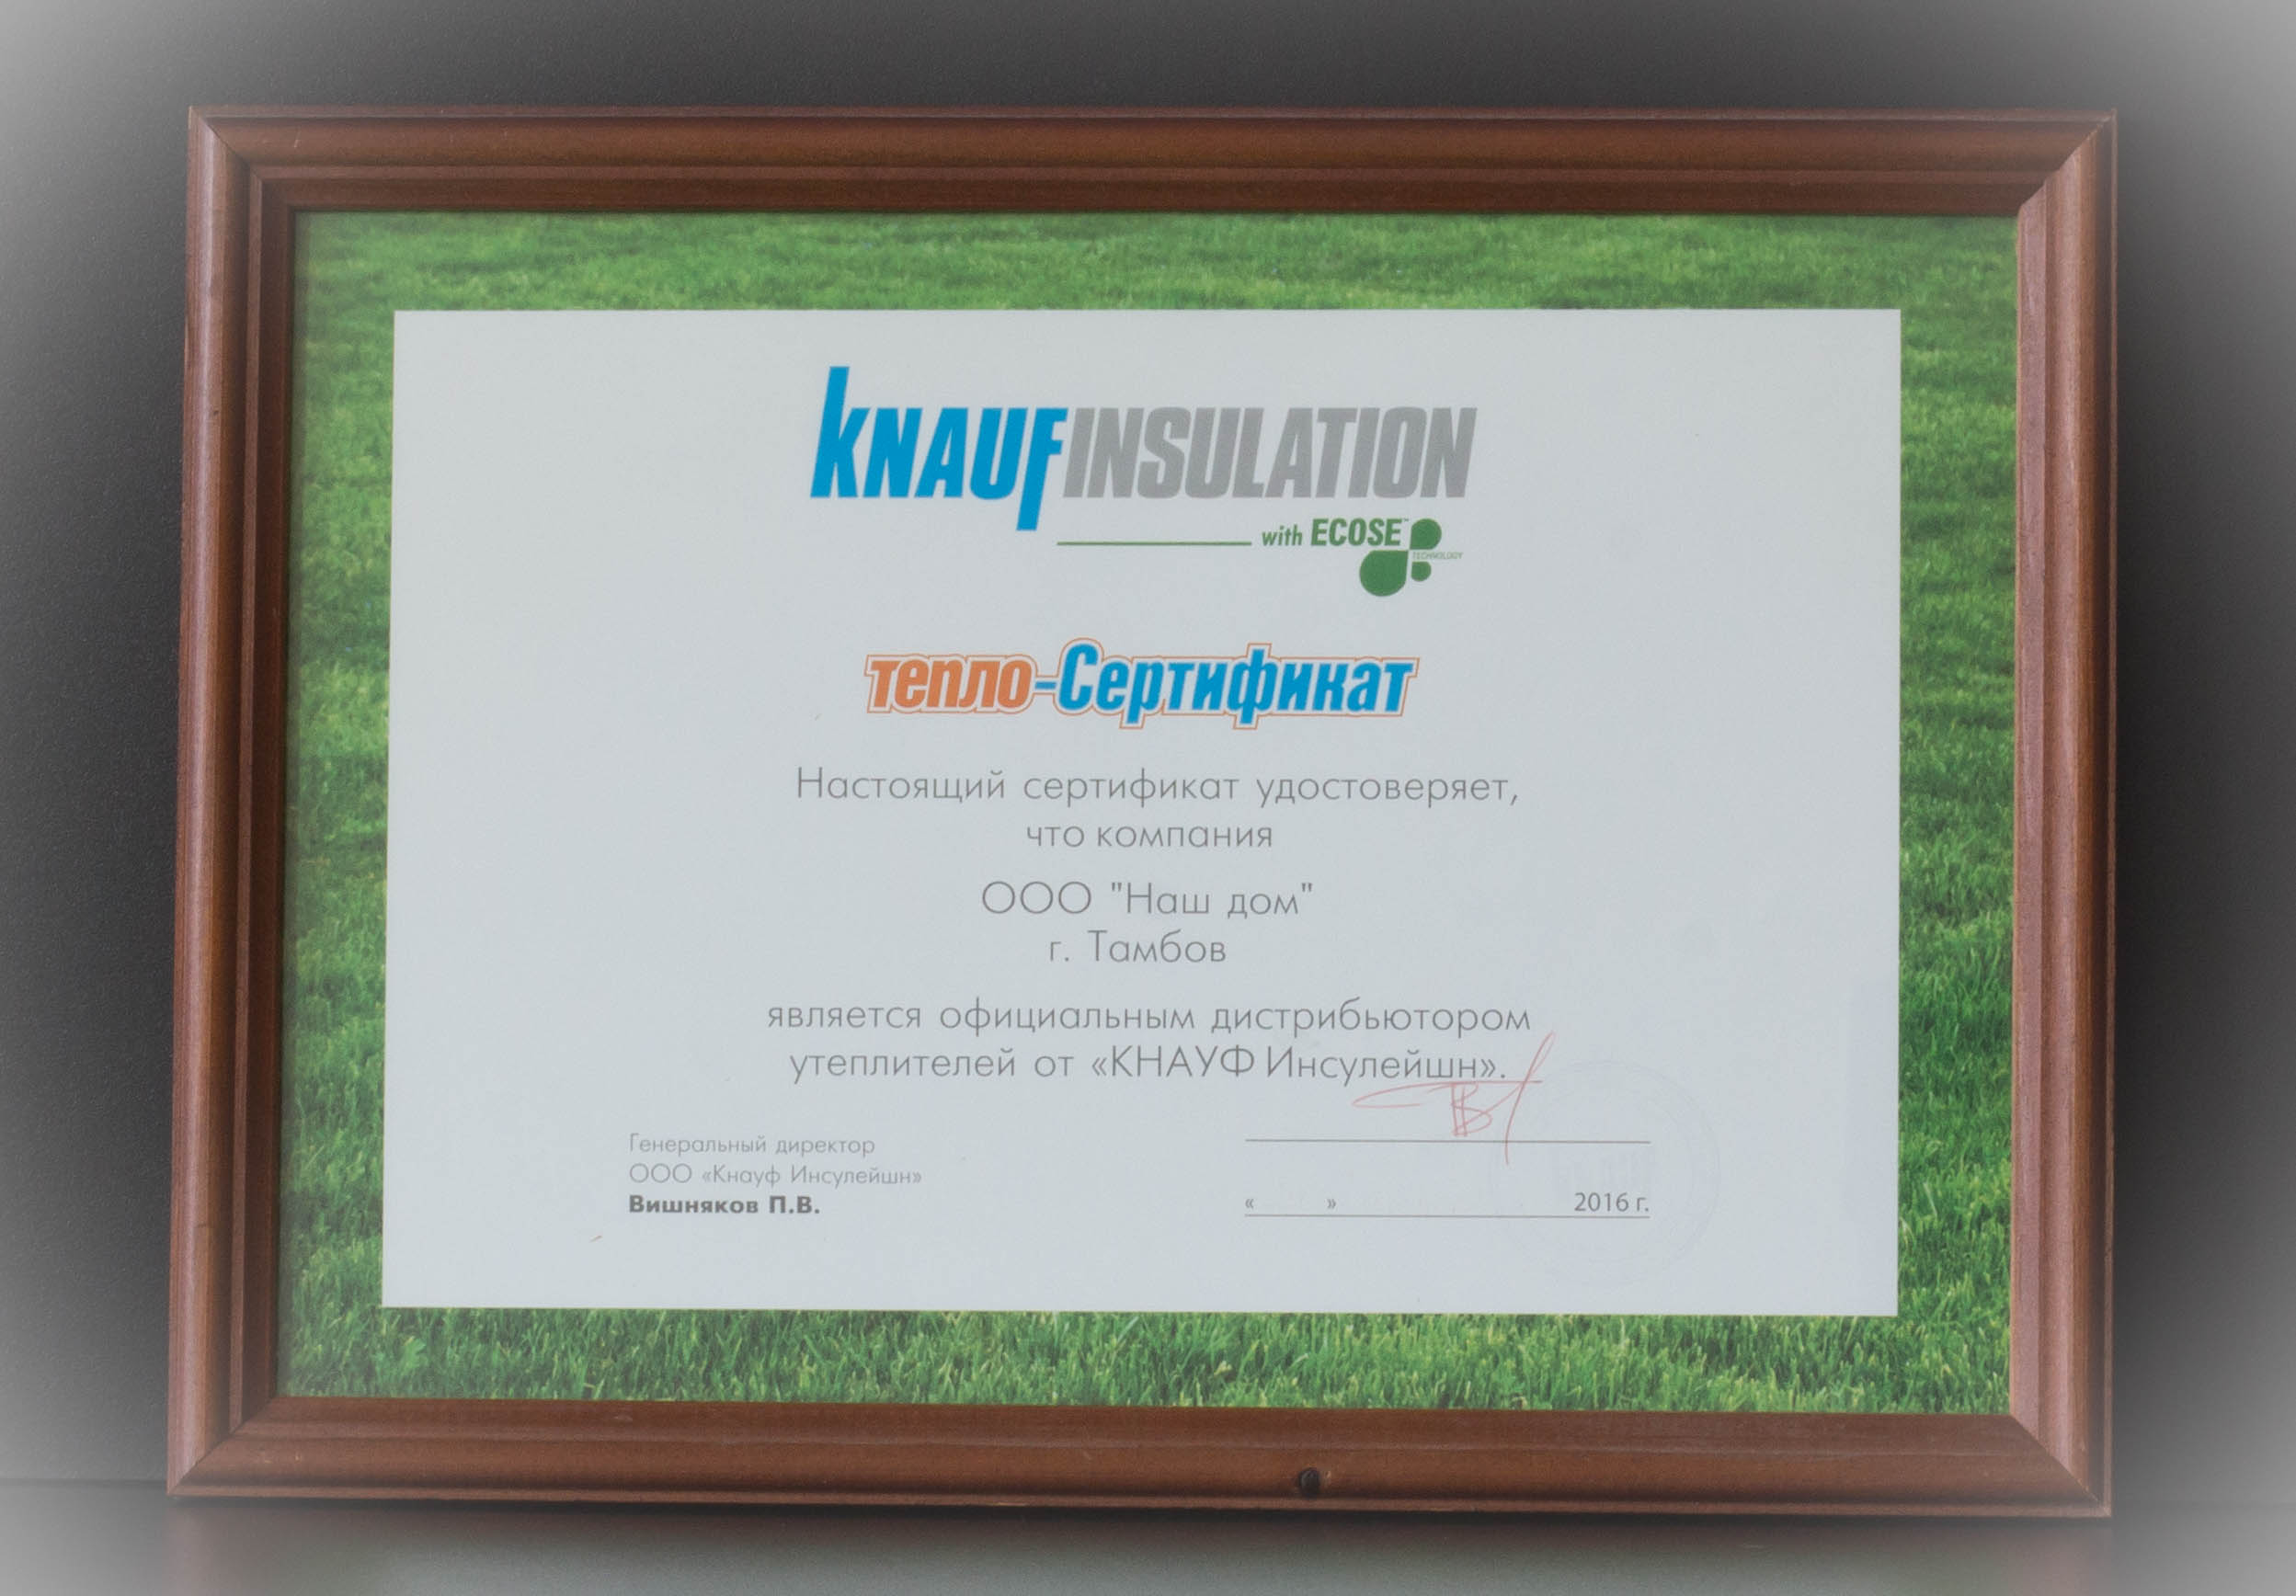 Сертификат, удостоверяющий, что мы являемся официальным дистрибьютором утеплителей «Кнауф Инсулейшн»